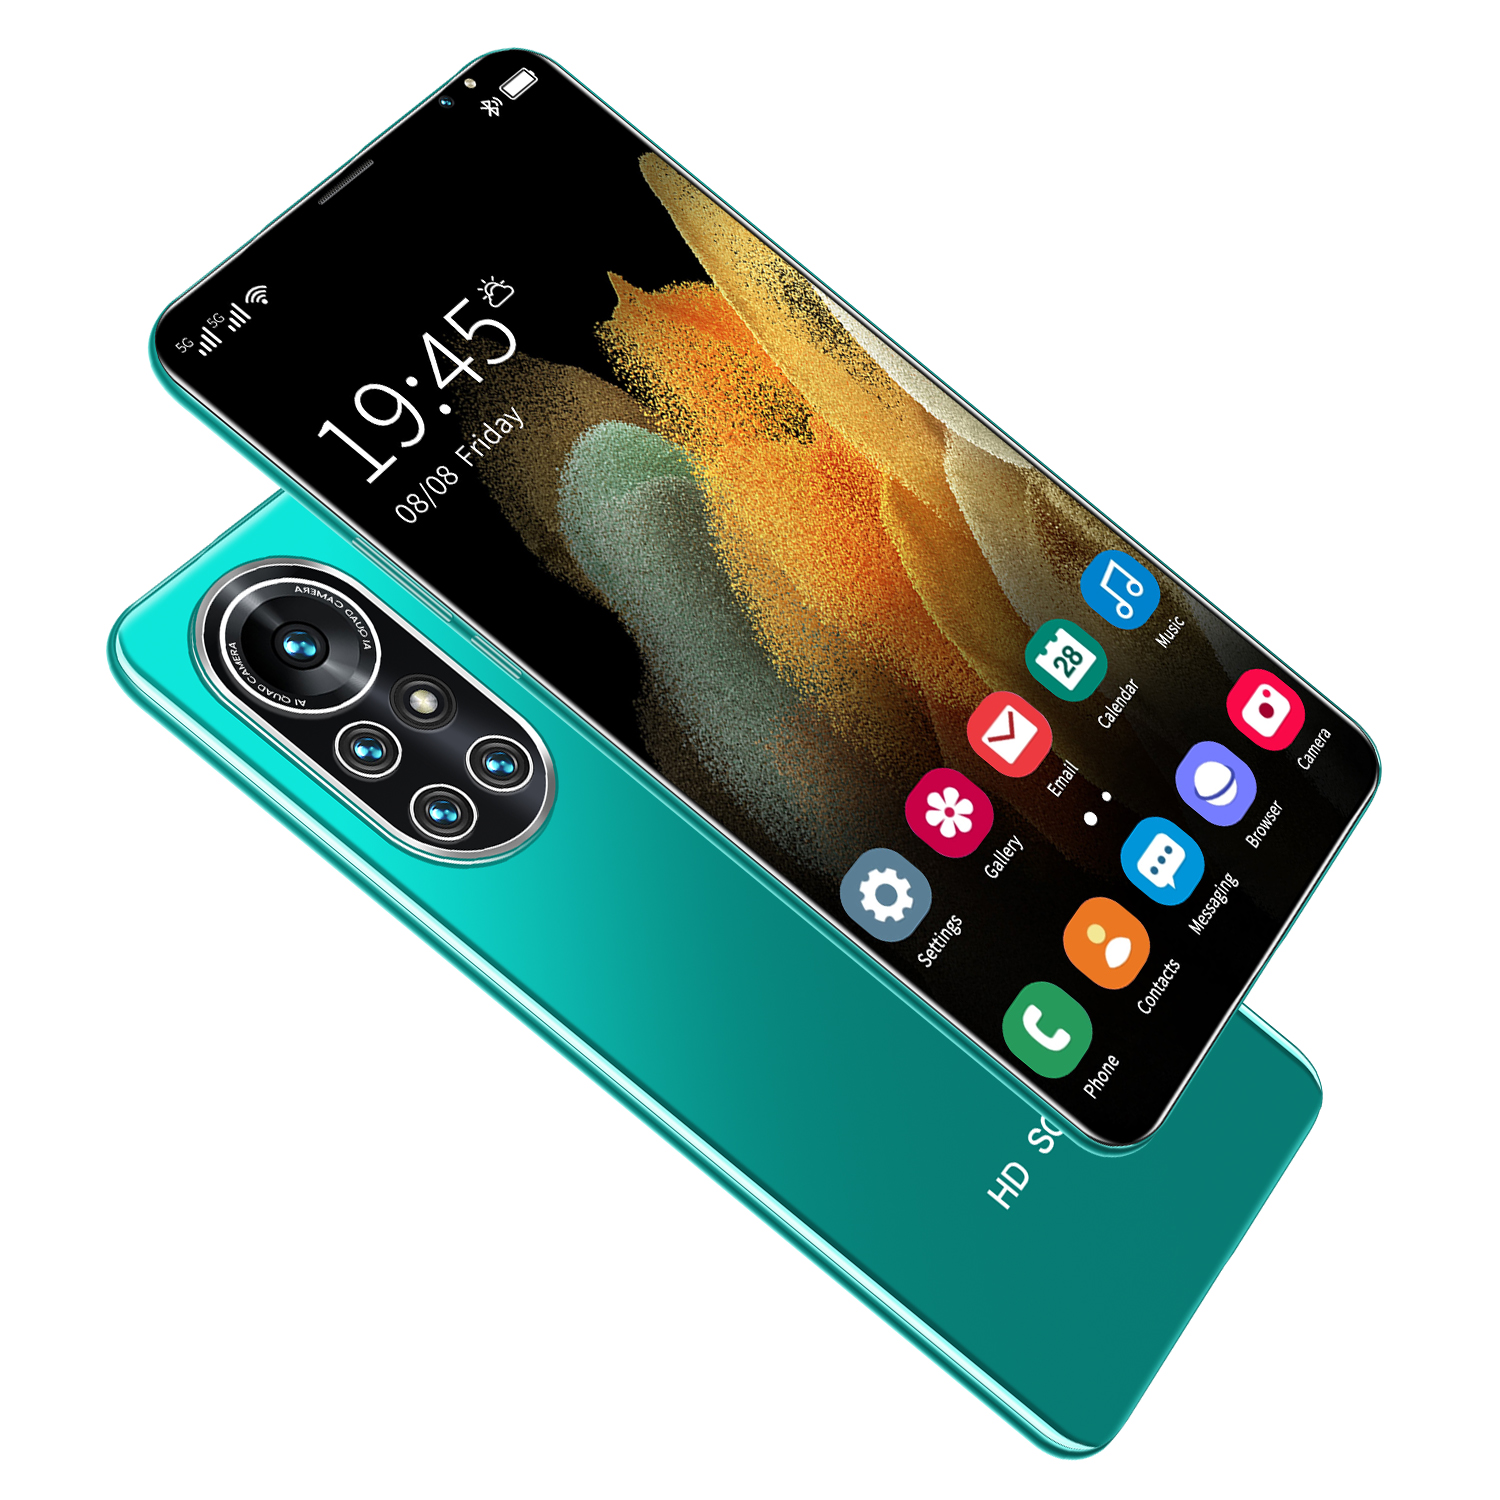 HAU WEI Nowa8 Pro  โทรศัพท์  6.3นิ้ว 12+512G โทรศัพท์มือถือ 5000mah มือถือราคาถูก Android10.0 smartphone full HD screen โทรศัพท์ราคาถูก 24MP+48MP รองรับแอปพลิเคชันธนาคาร